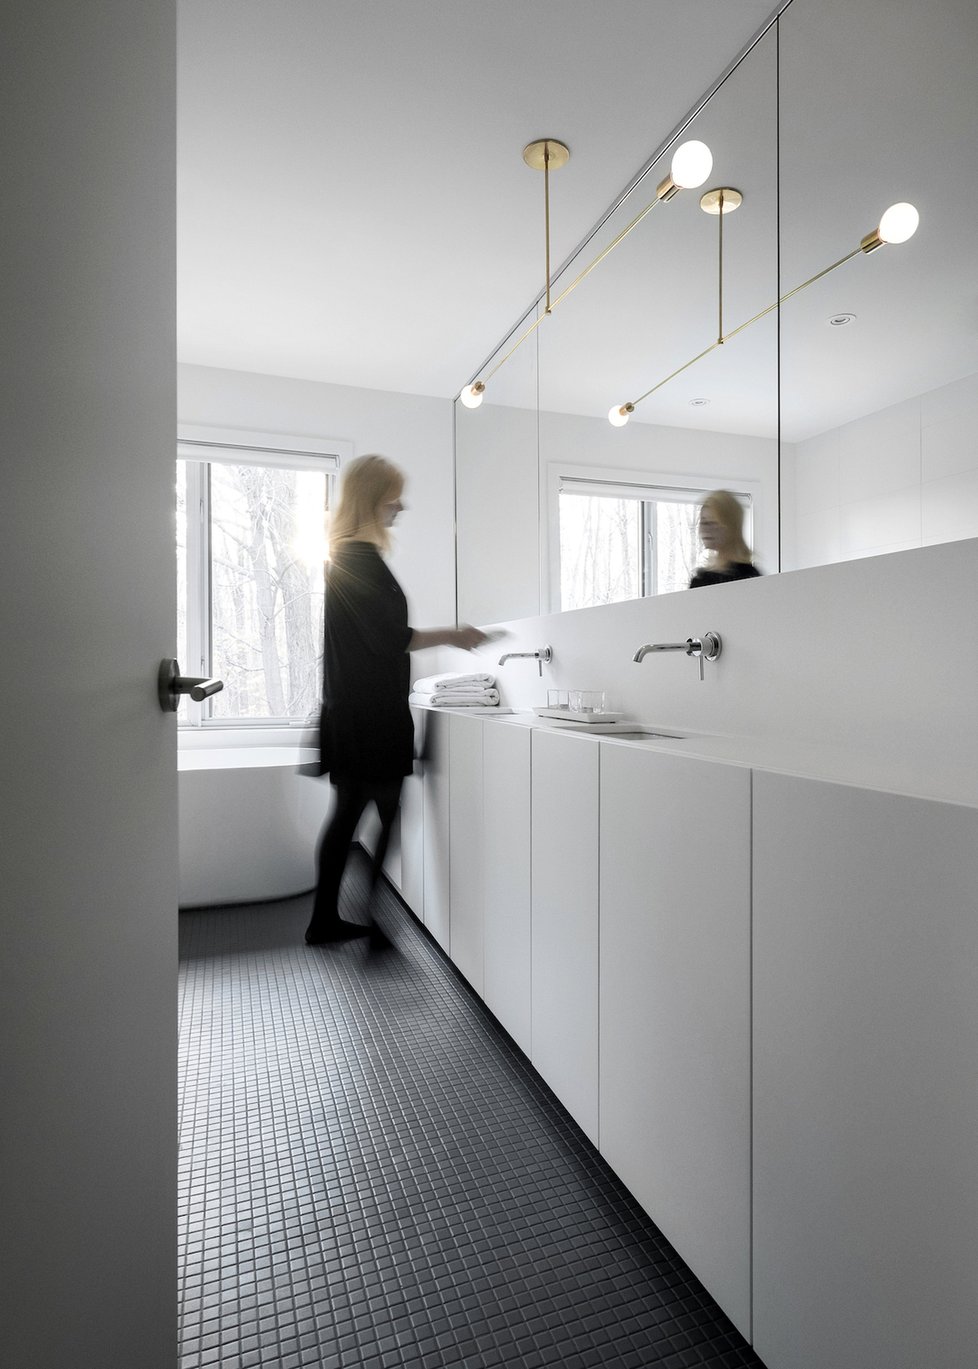 Dům v Montrealu se může pochlubit jednoduchým interiérem v bílé barvě